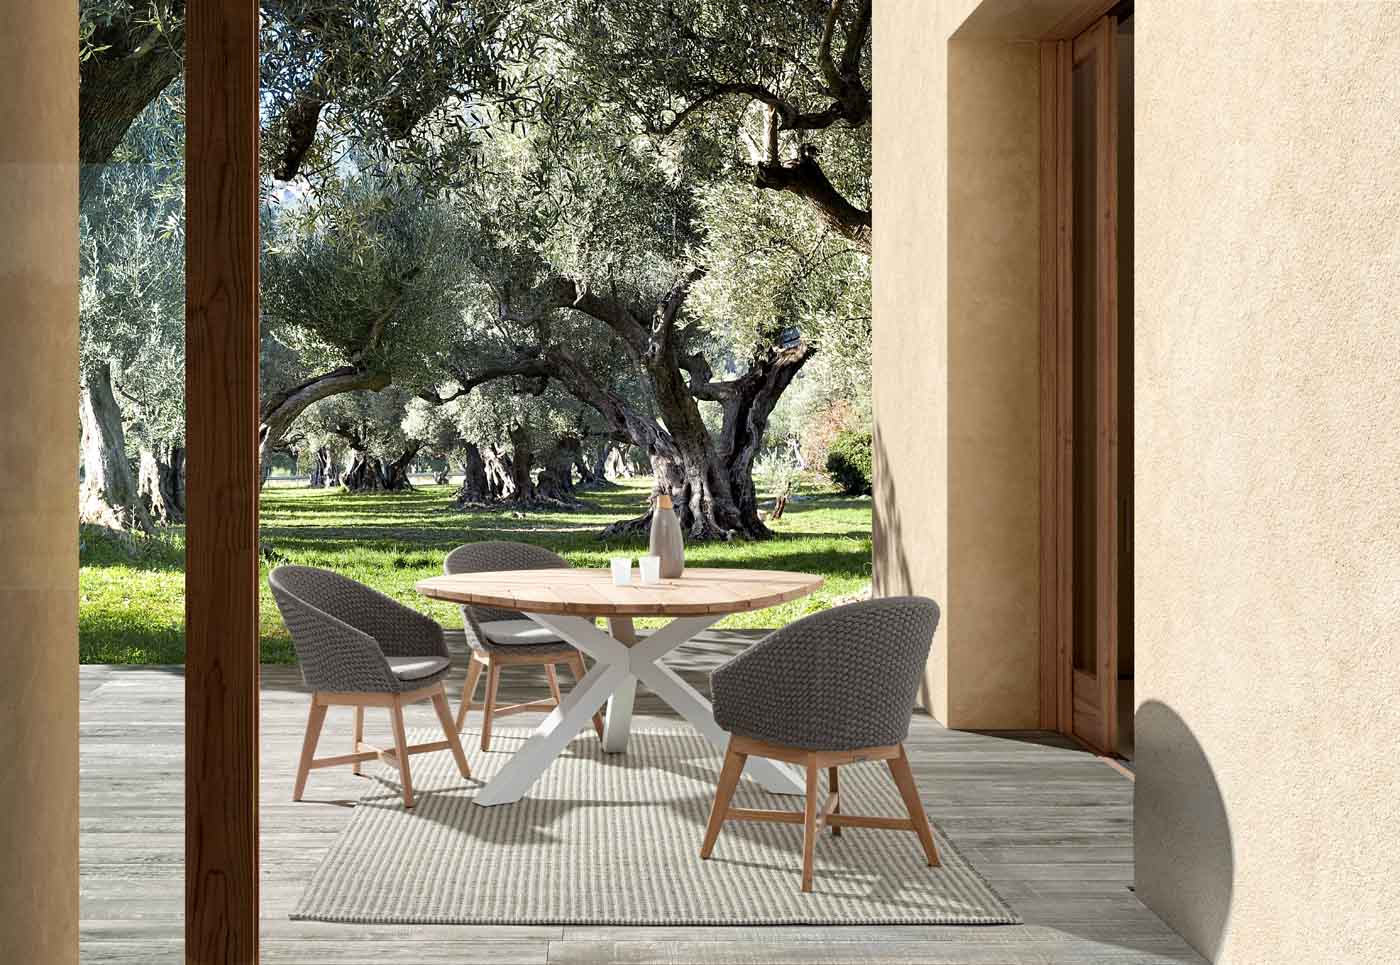 Wunderschöner Gartentisch Palmdale mit runder Platte. Der Tisch besteht aus einer Platte aus Teakholz und einem Gestell aus Aluminium